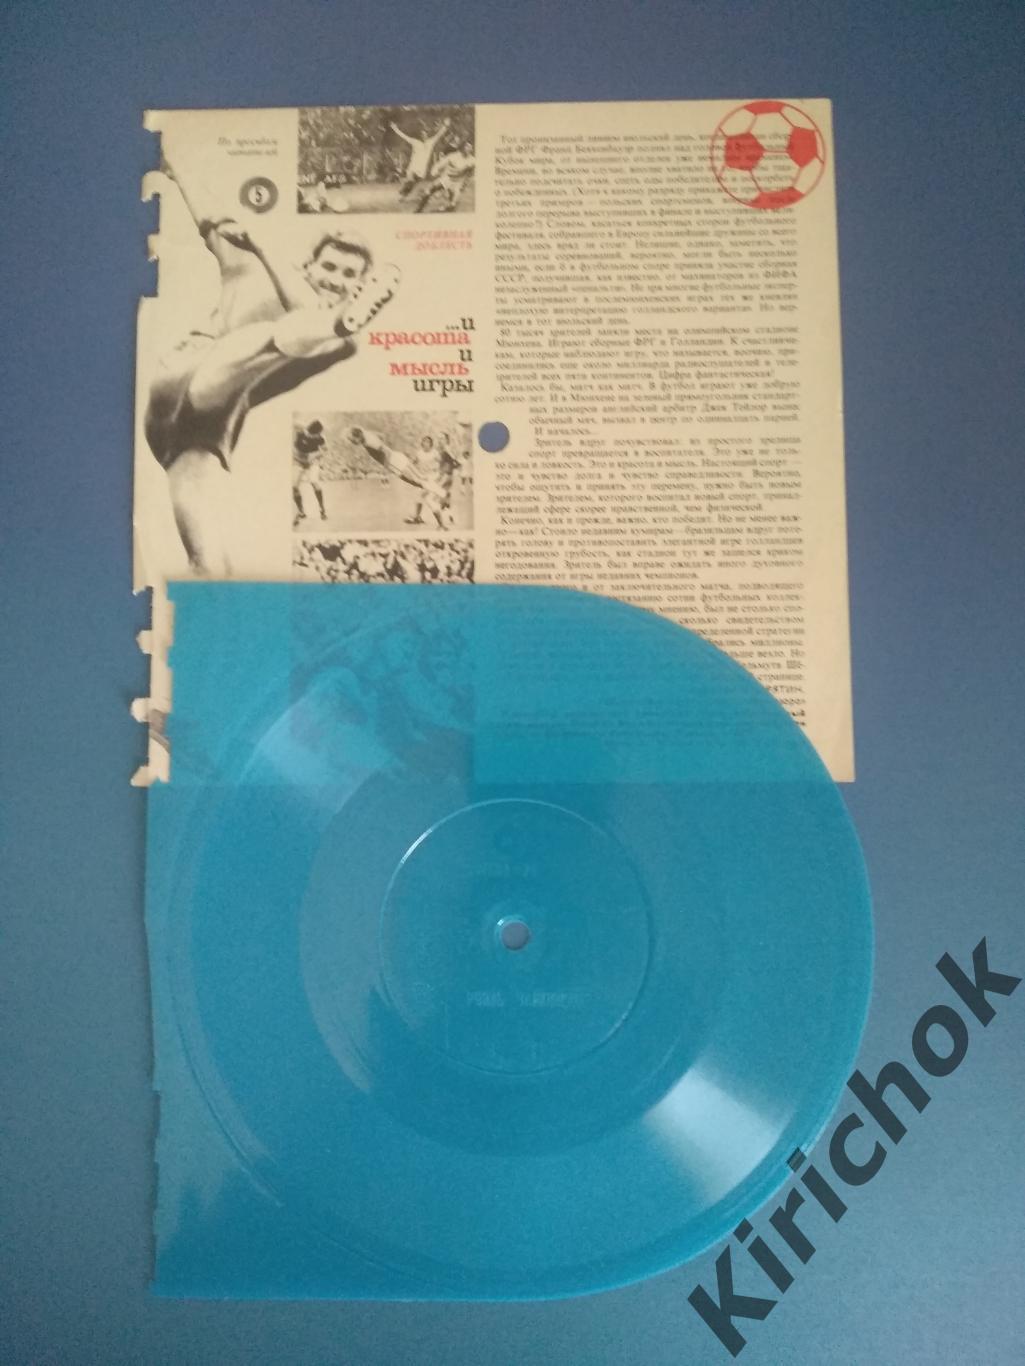 РАРИТЕТ! Буклет и грампластинка из журнала: Москва СССР 1974.Чемпионат мира 1974